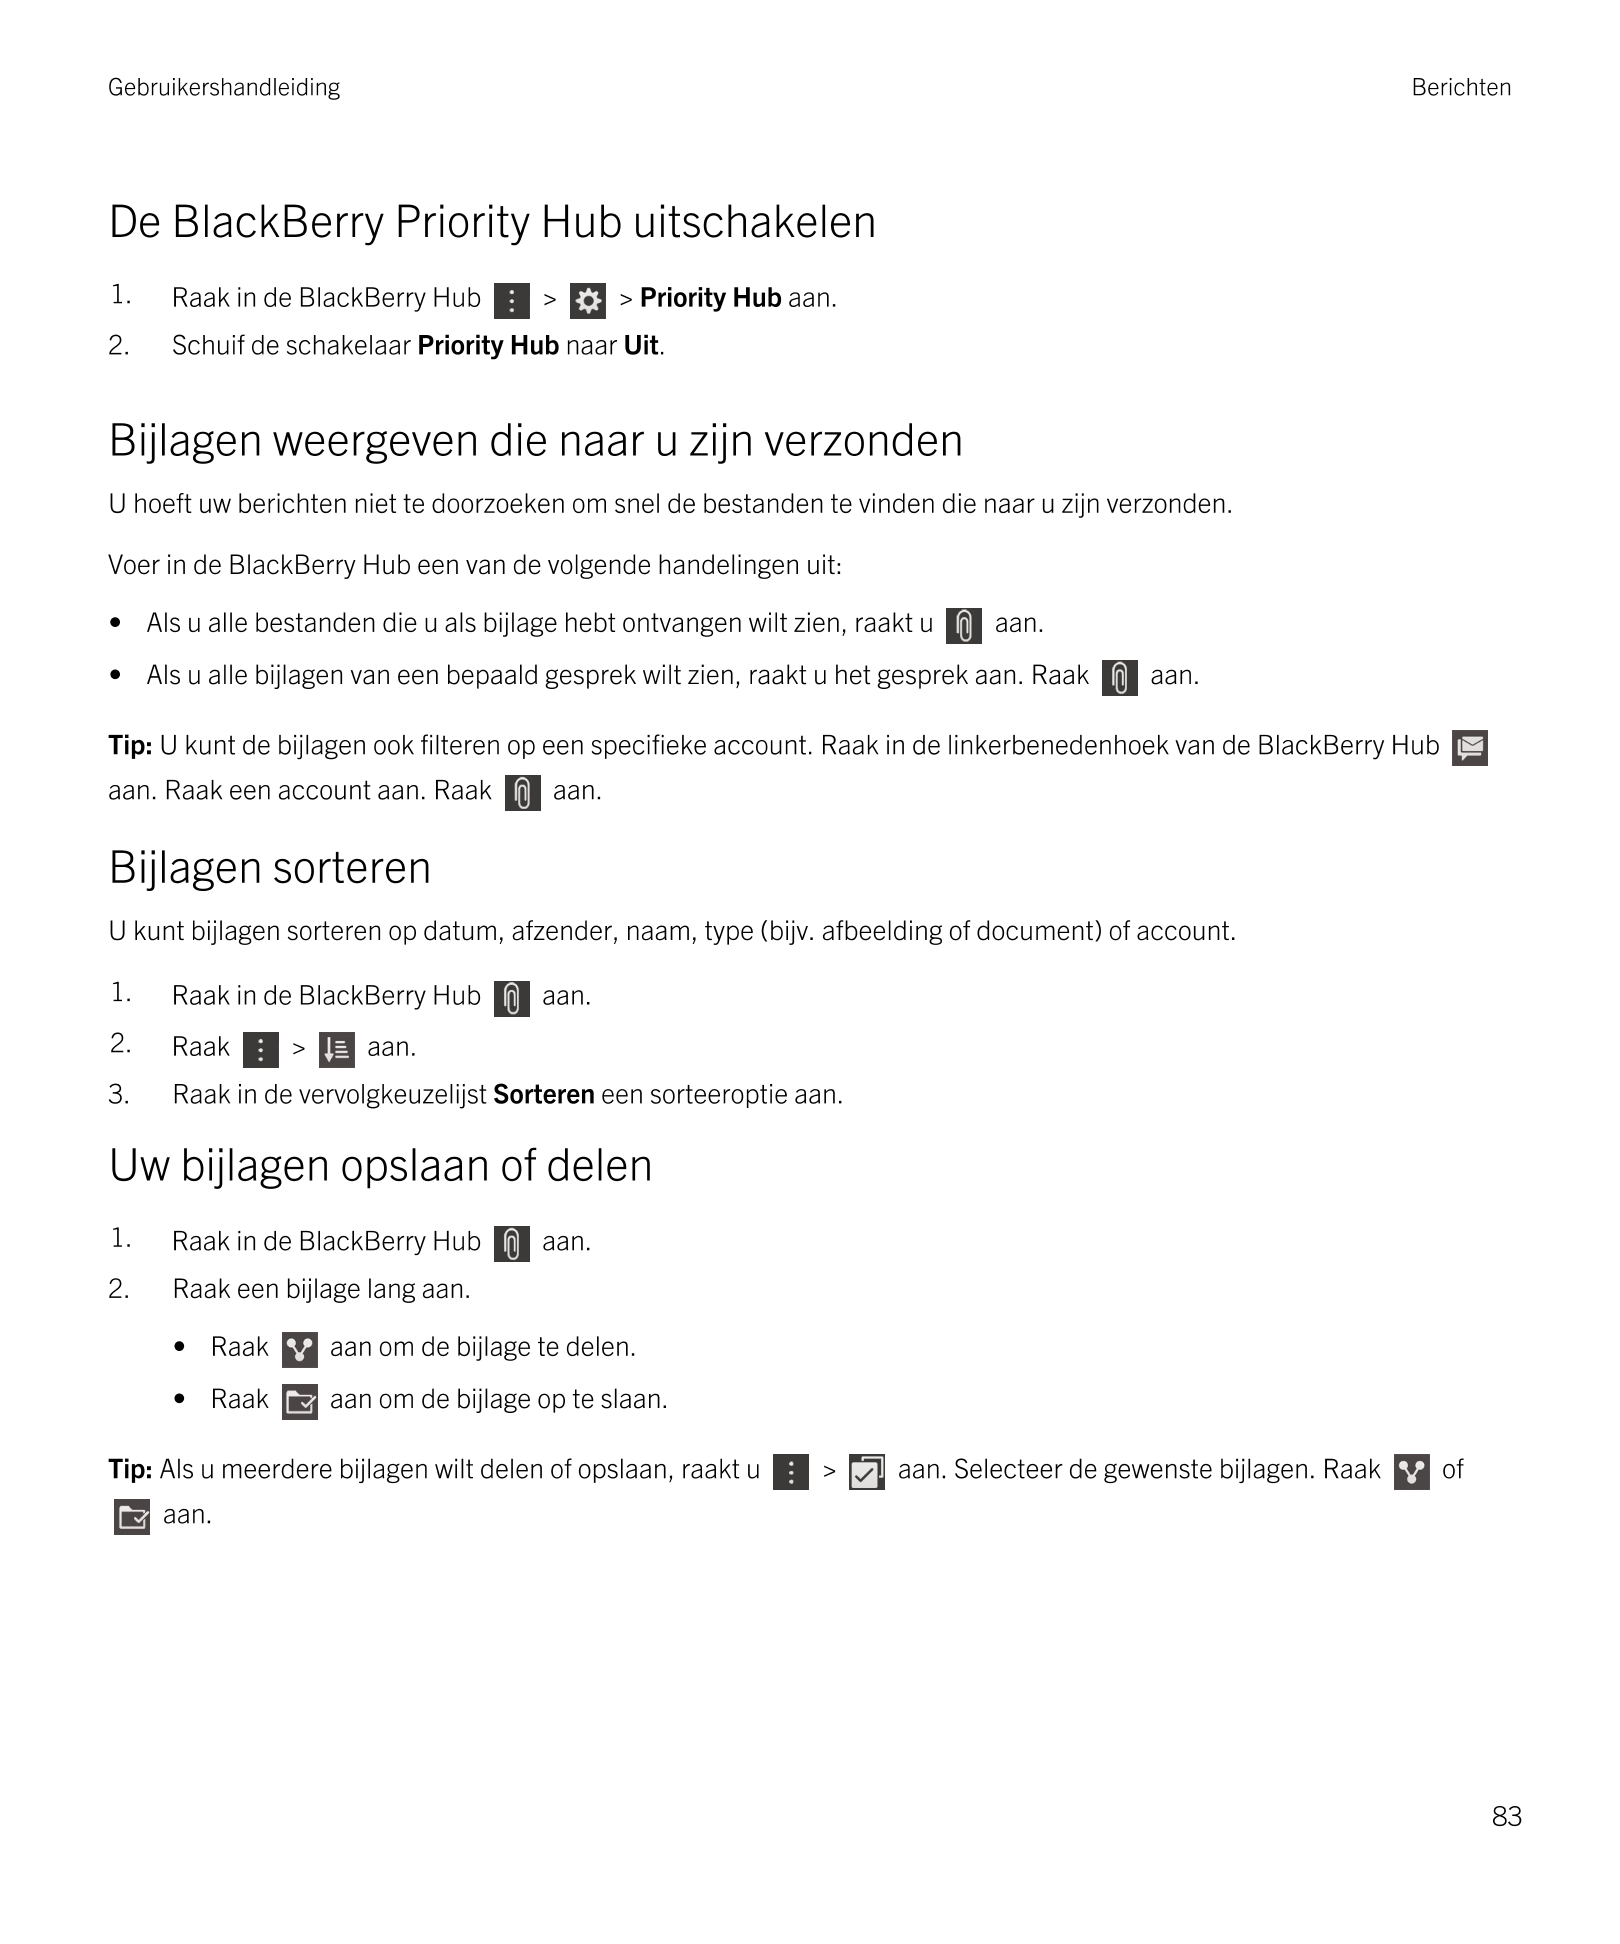 Gebruikershandleiding Berichten
De  BlackBerry Priority Hub uitschakelen
1. Raak in de  BlackBerry Hub   >   >  Priority Hub aan